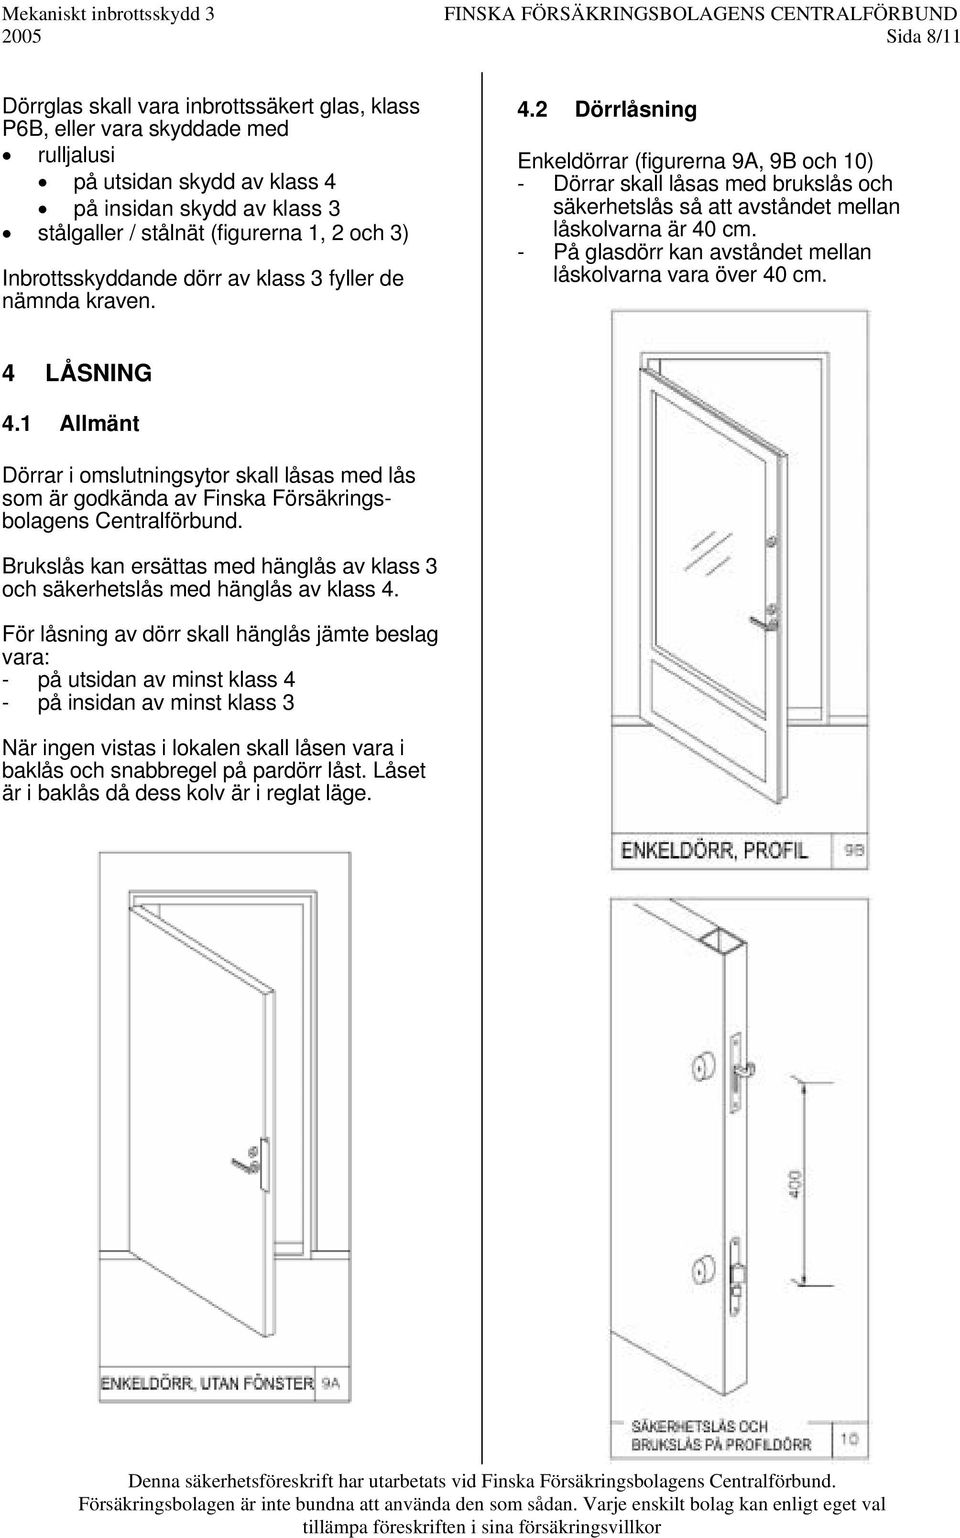 2 Dörrlåsning Enkeldörrar (figurerna 9A, 9B och 10) - Dörrar skall låsas med brukslås och säkerhetslås så att avståndet mellan låskolvarna är 40 cm.